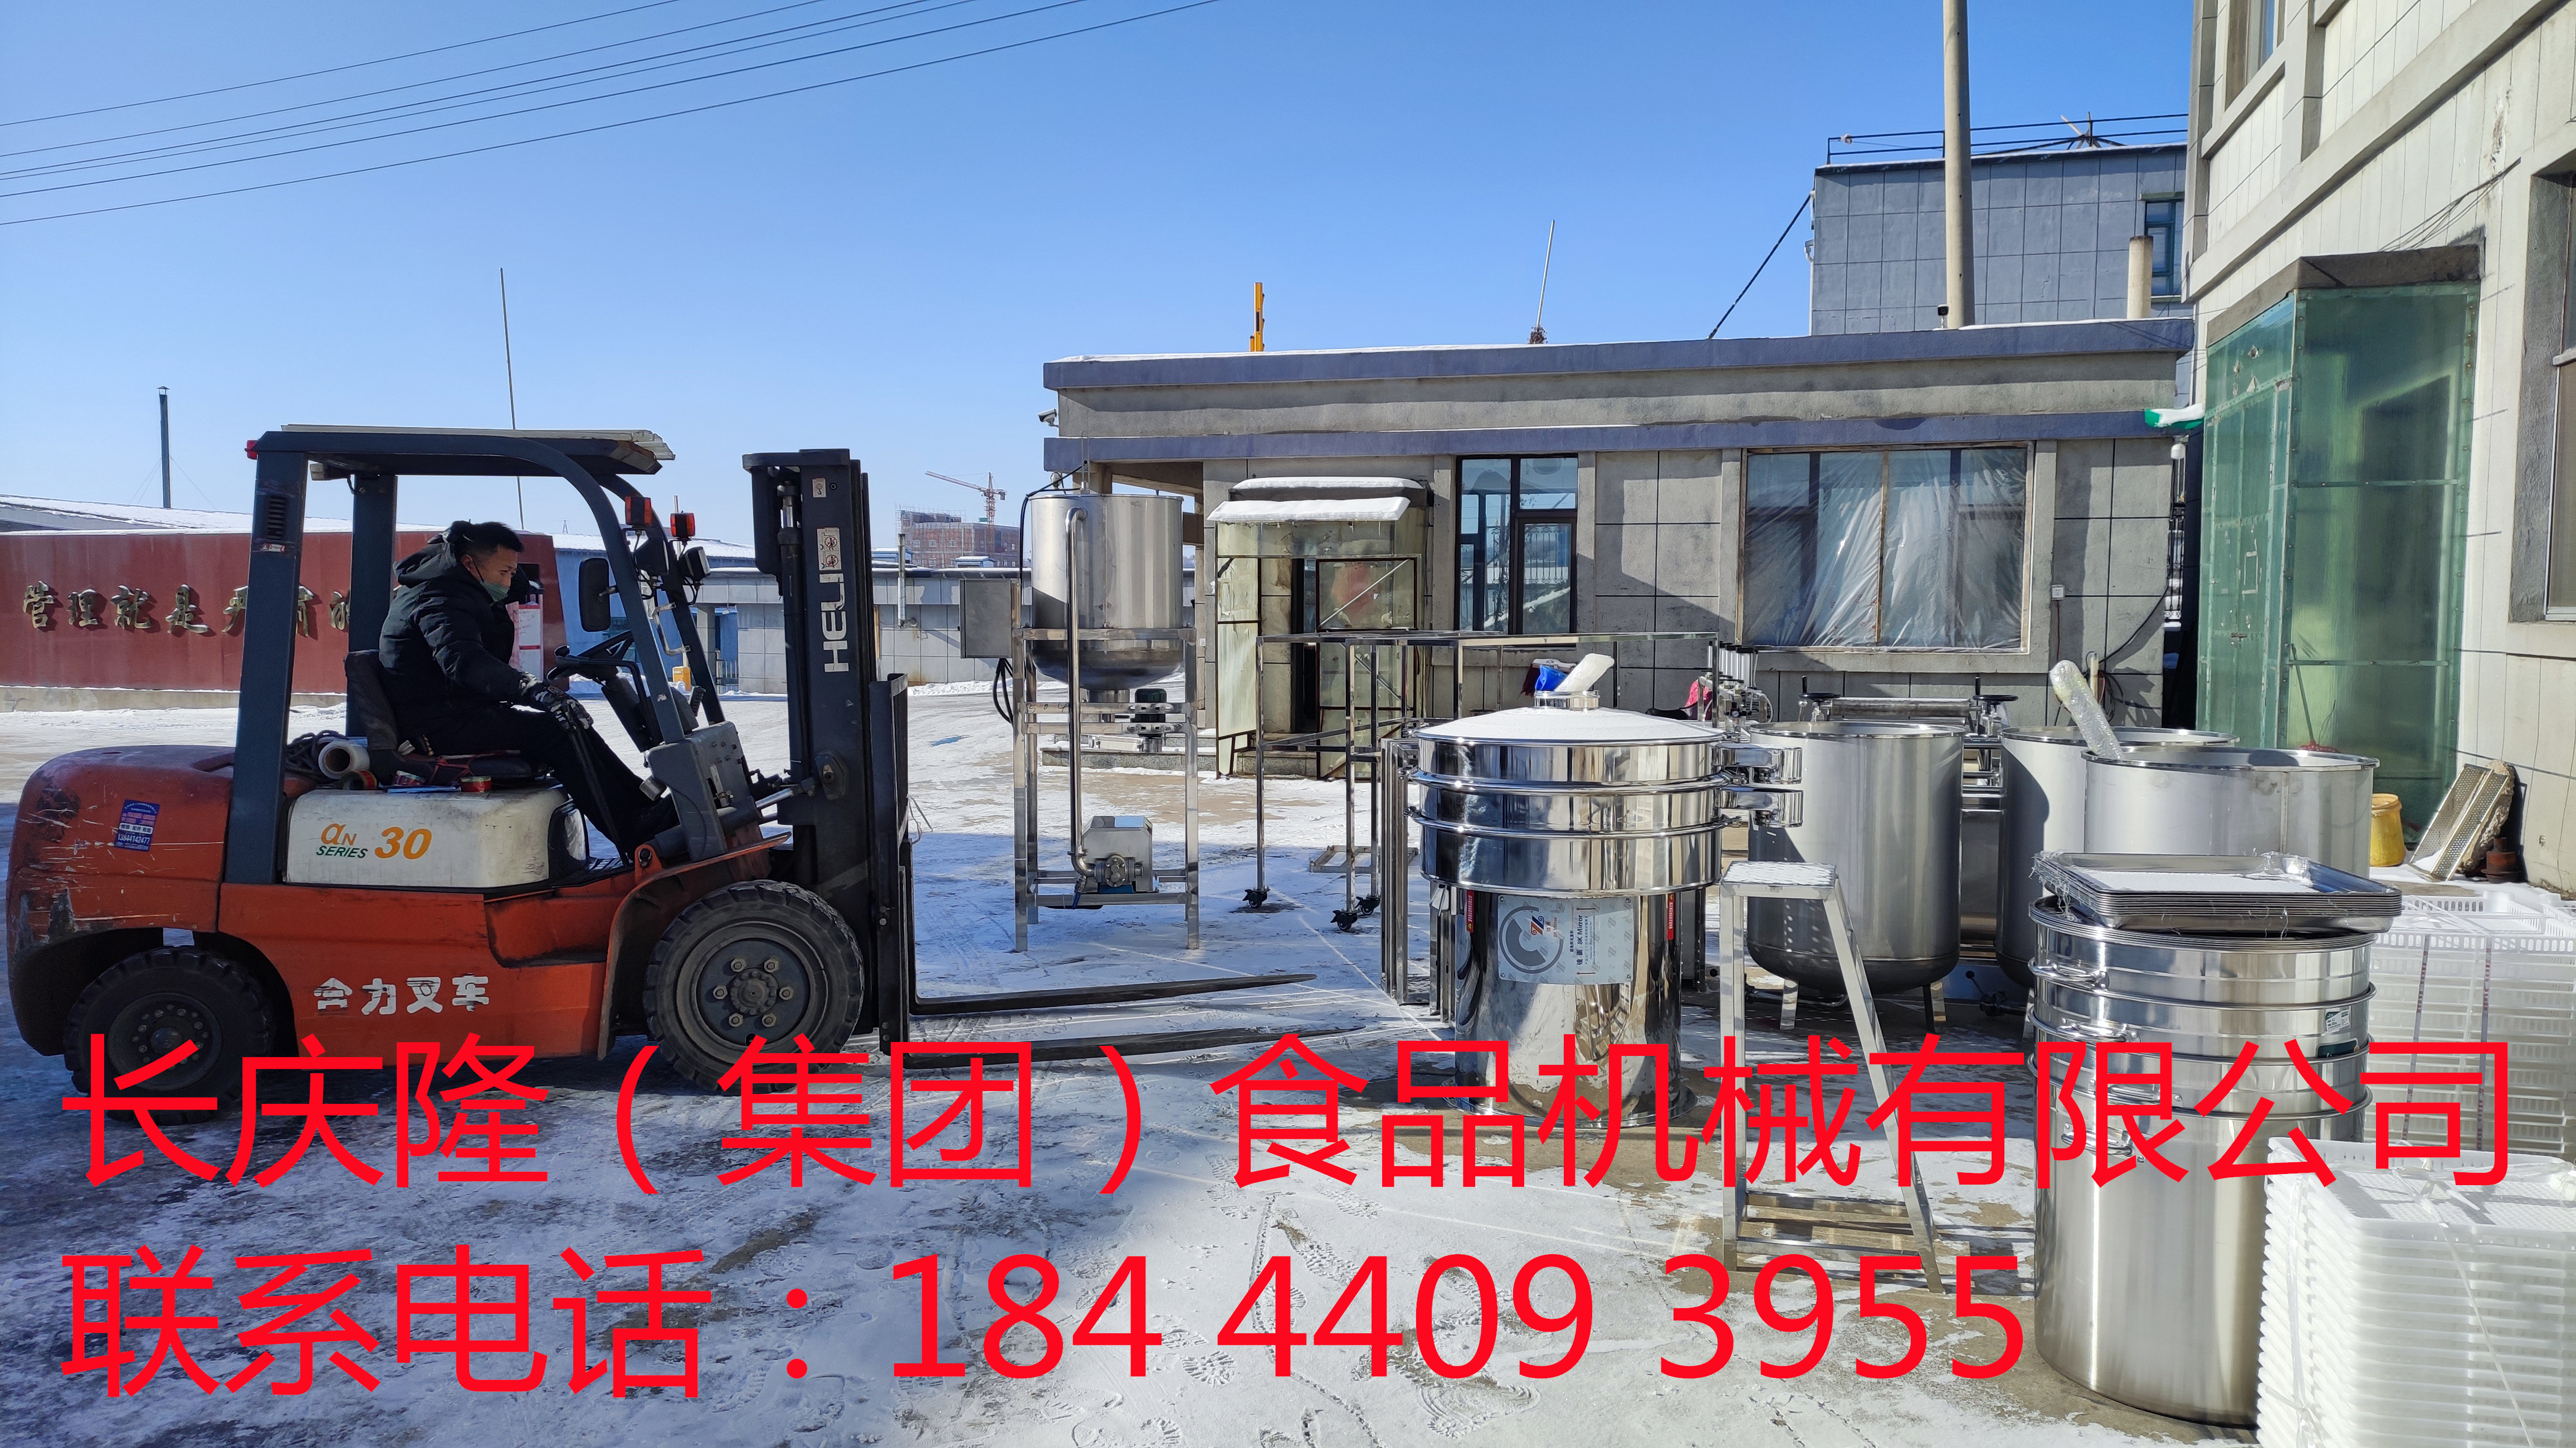 发往锦州的大型豆腐机设备装车发货 (6)_副本.jpg